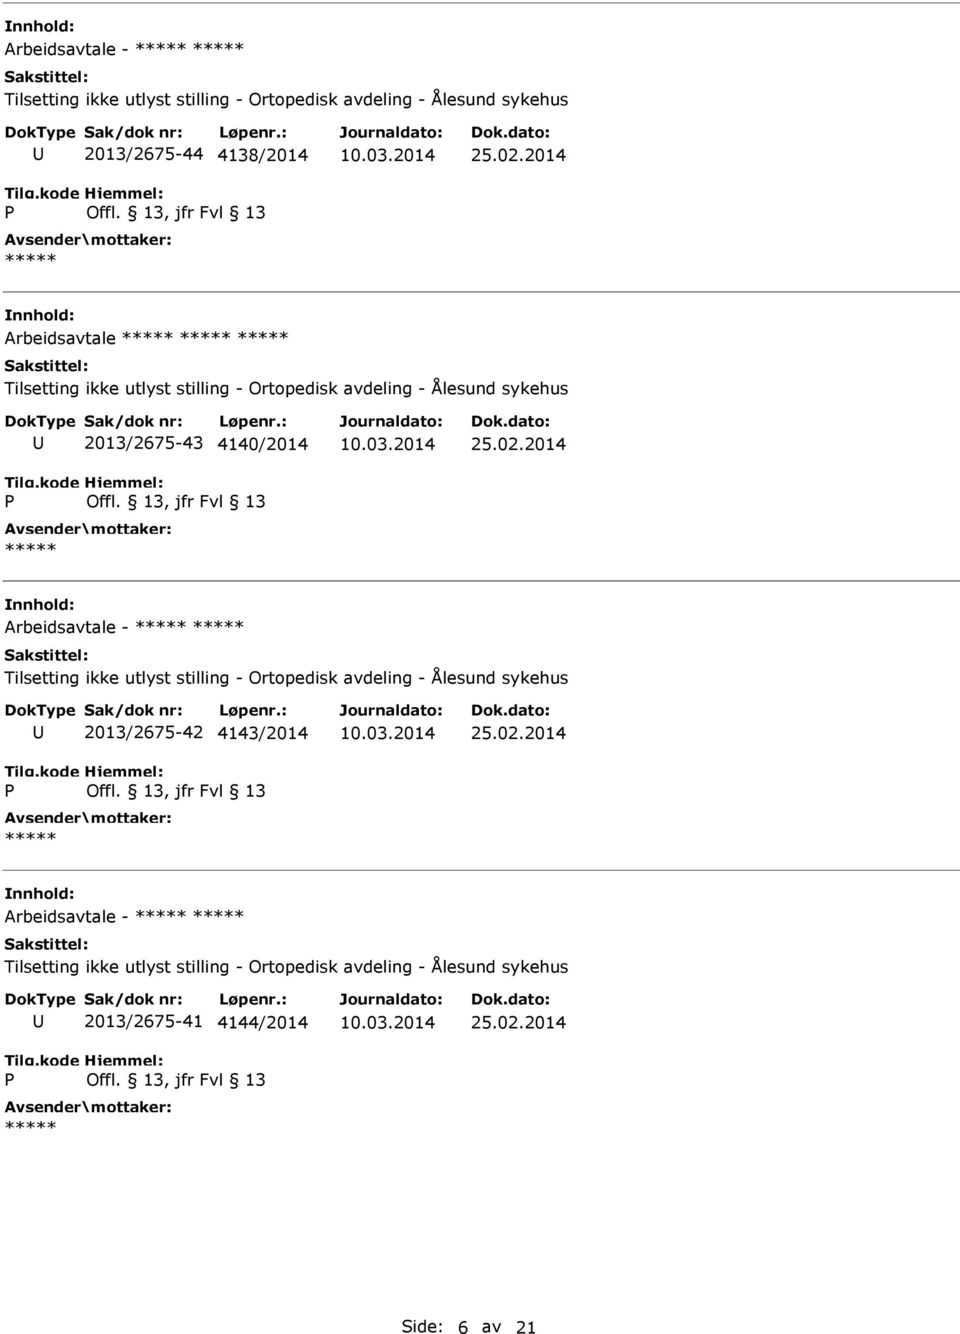 2014 Arbeidsavtale - Tilsetting ikke utlyst stilling - Ortopedisk avdeling - Ålesund sykehus 2013/2675-42 4143/2014 25.02.